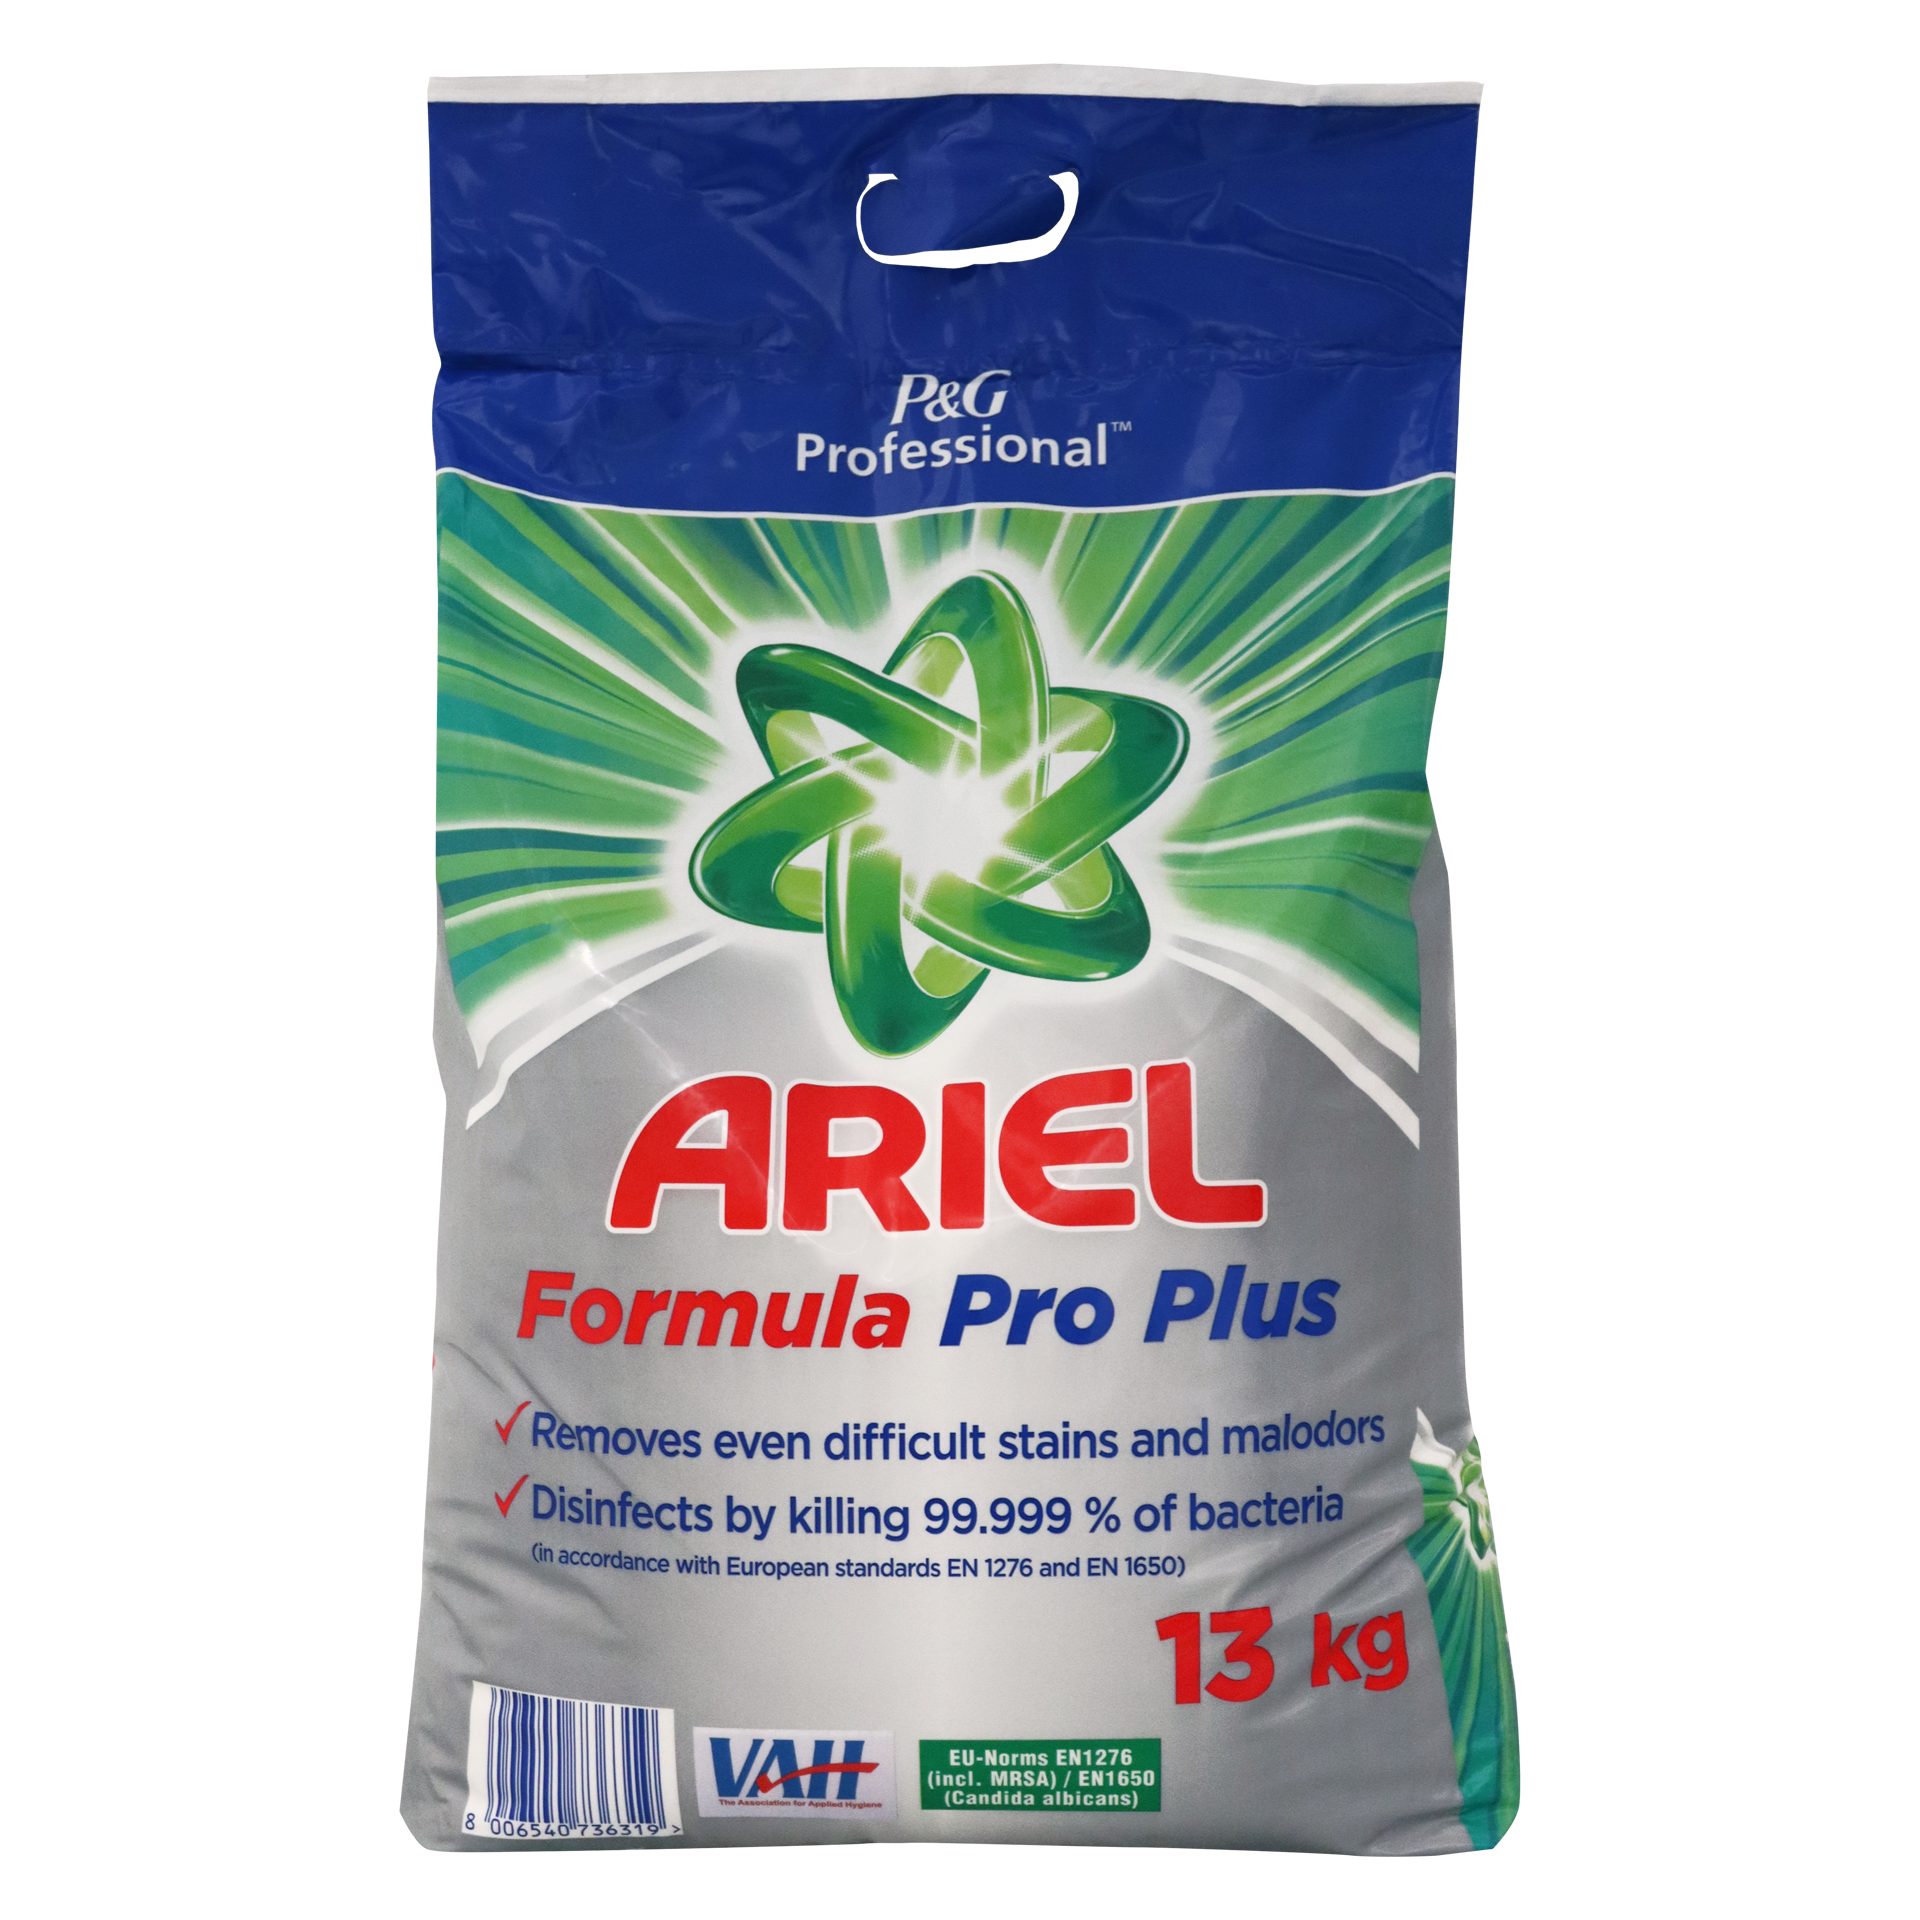 Procter & Gamble Ariel Formula Pro Plus 13 kg Waschmittel Spezialwaschmittel